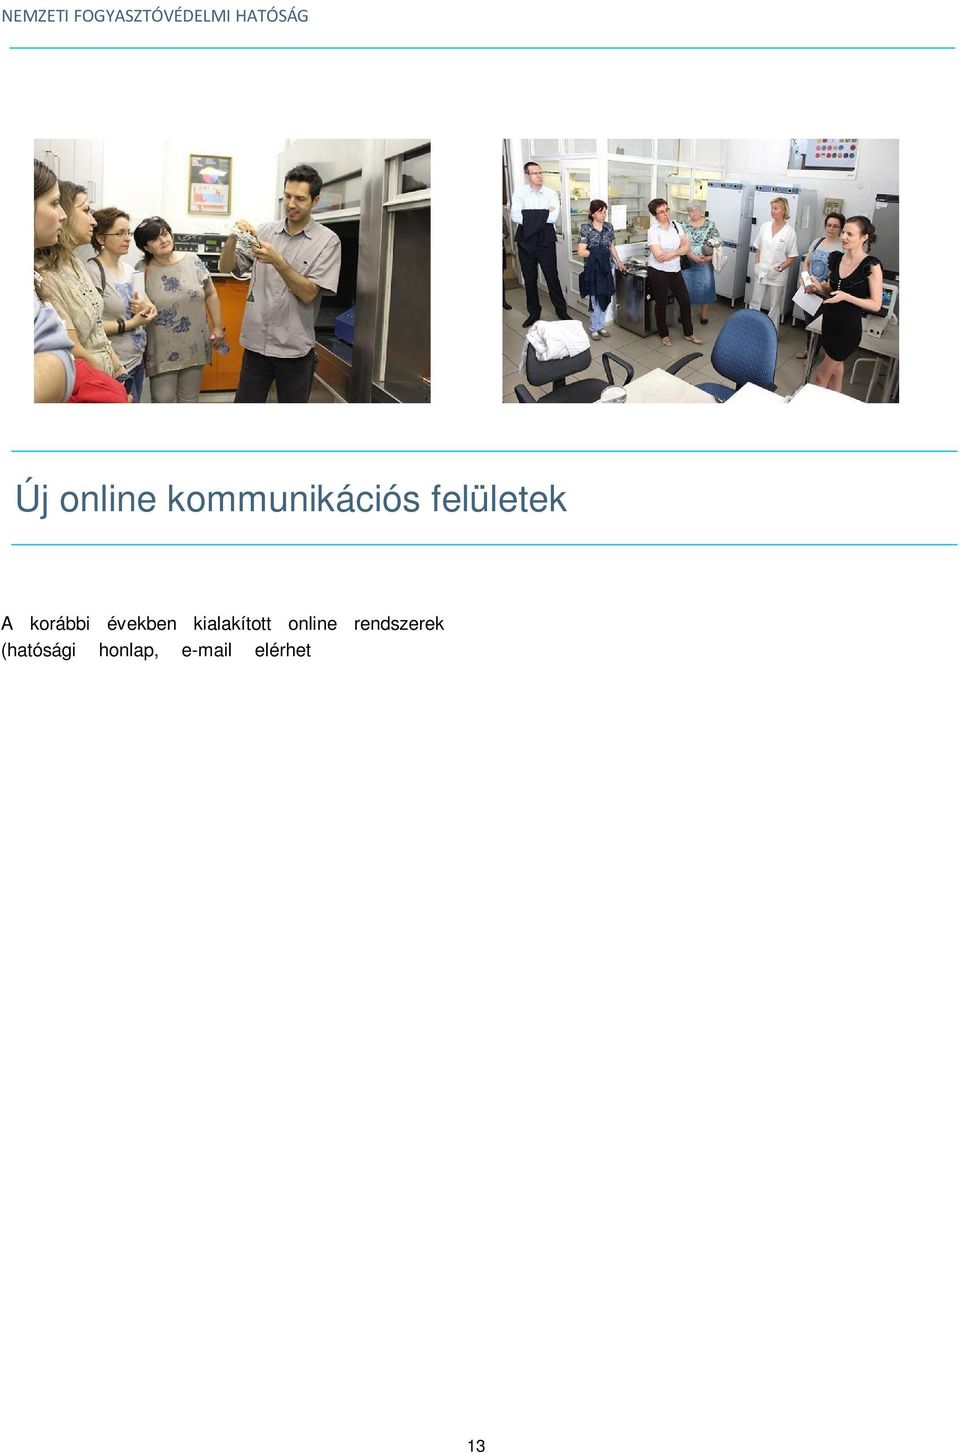 24-2014-2014-0001 azonosítószámú projekt keretében Mintawebáruház néven, egy egyedülálló és innovatív honlapot hozott létre, azzal a céllal, hogy interaktív módon segítse a fogyasztókat és a